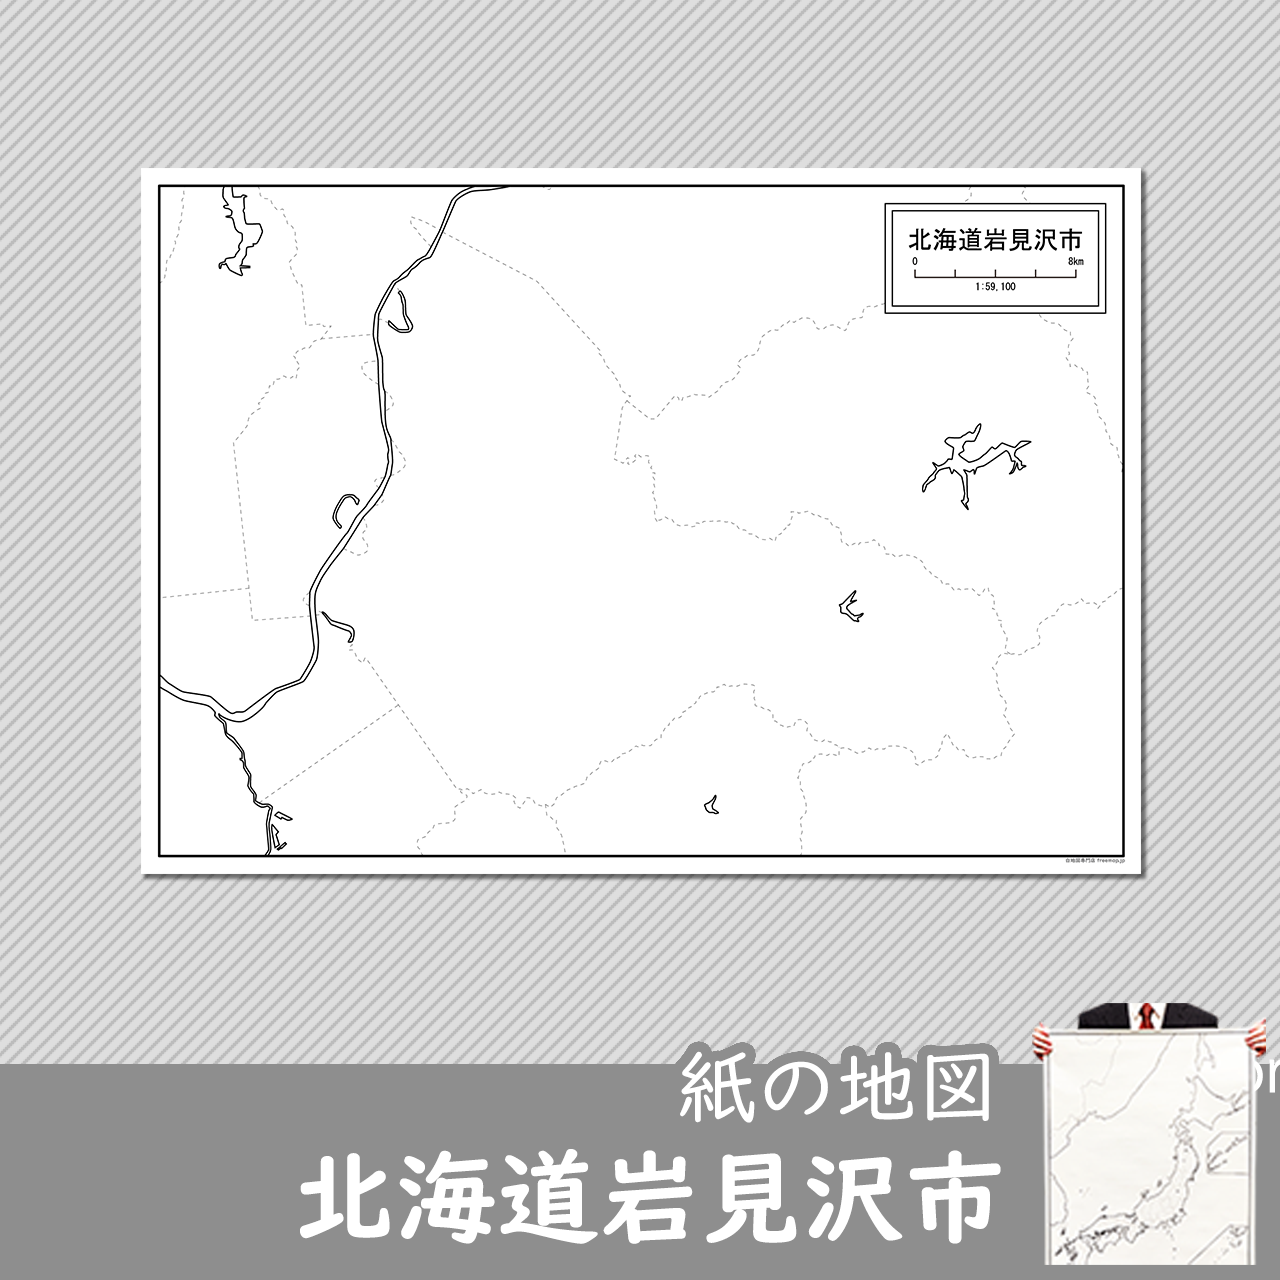 岩見沢市の紙の白地図のサムネイル